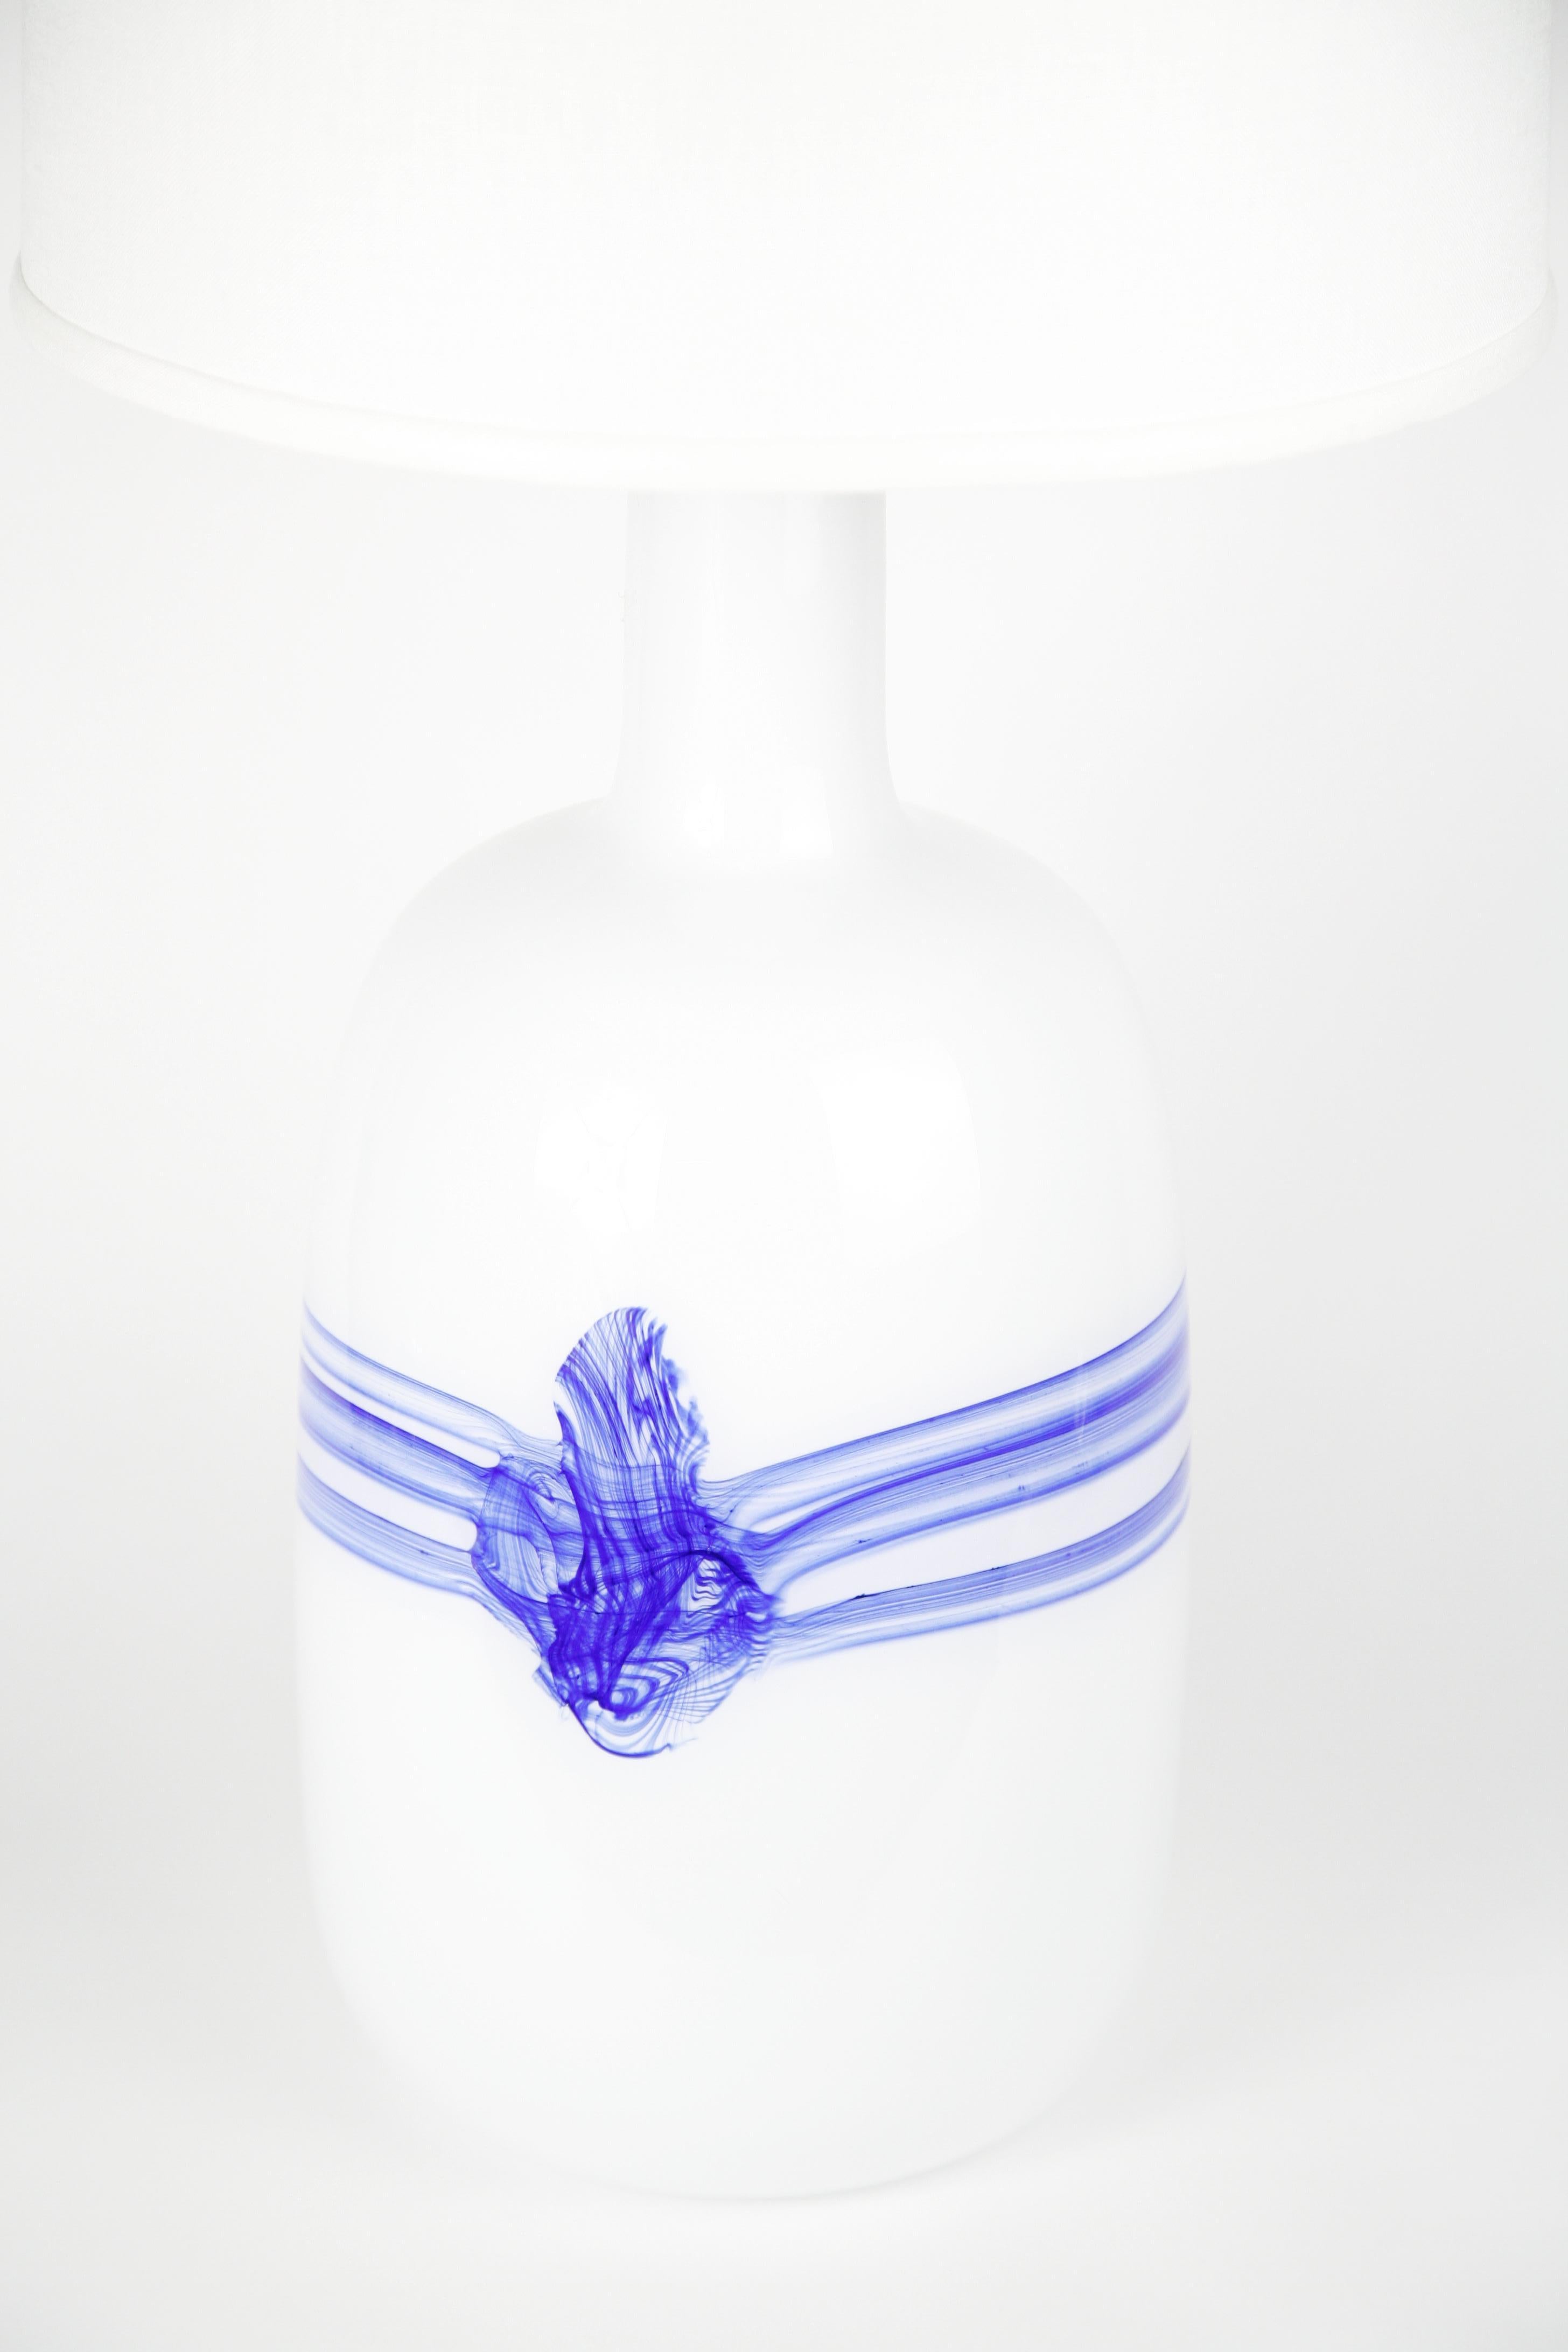 Grande et impressionnante lampe en verre opalin Holmegaard conçue par Michael Bang, fabriquée par le fabricant danois Holmegaard en 1980, verre blanc partiellement bleu royal avec un raccord en acier poli ; un modèle et une taille rarement vus ;